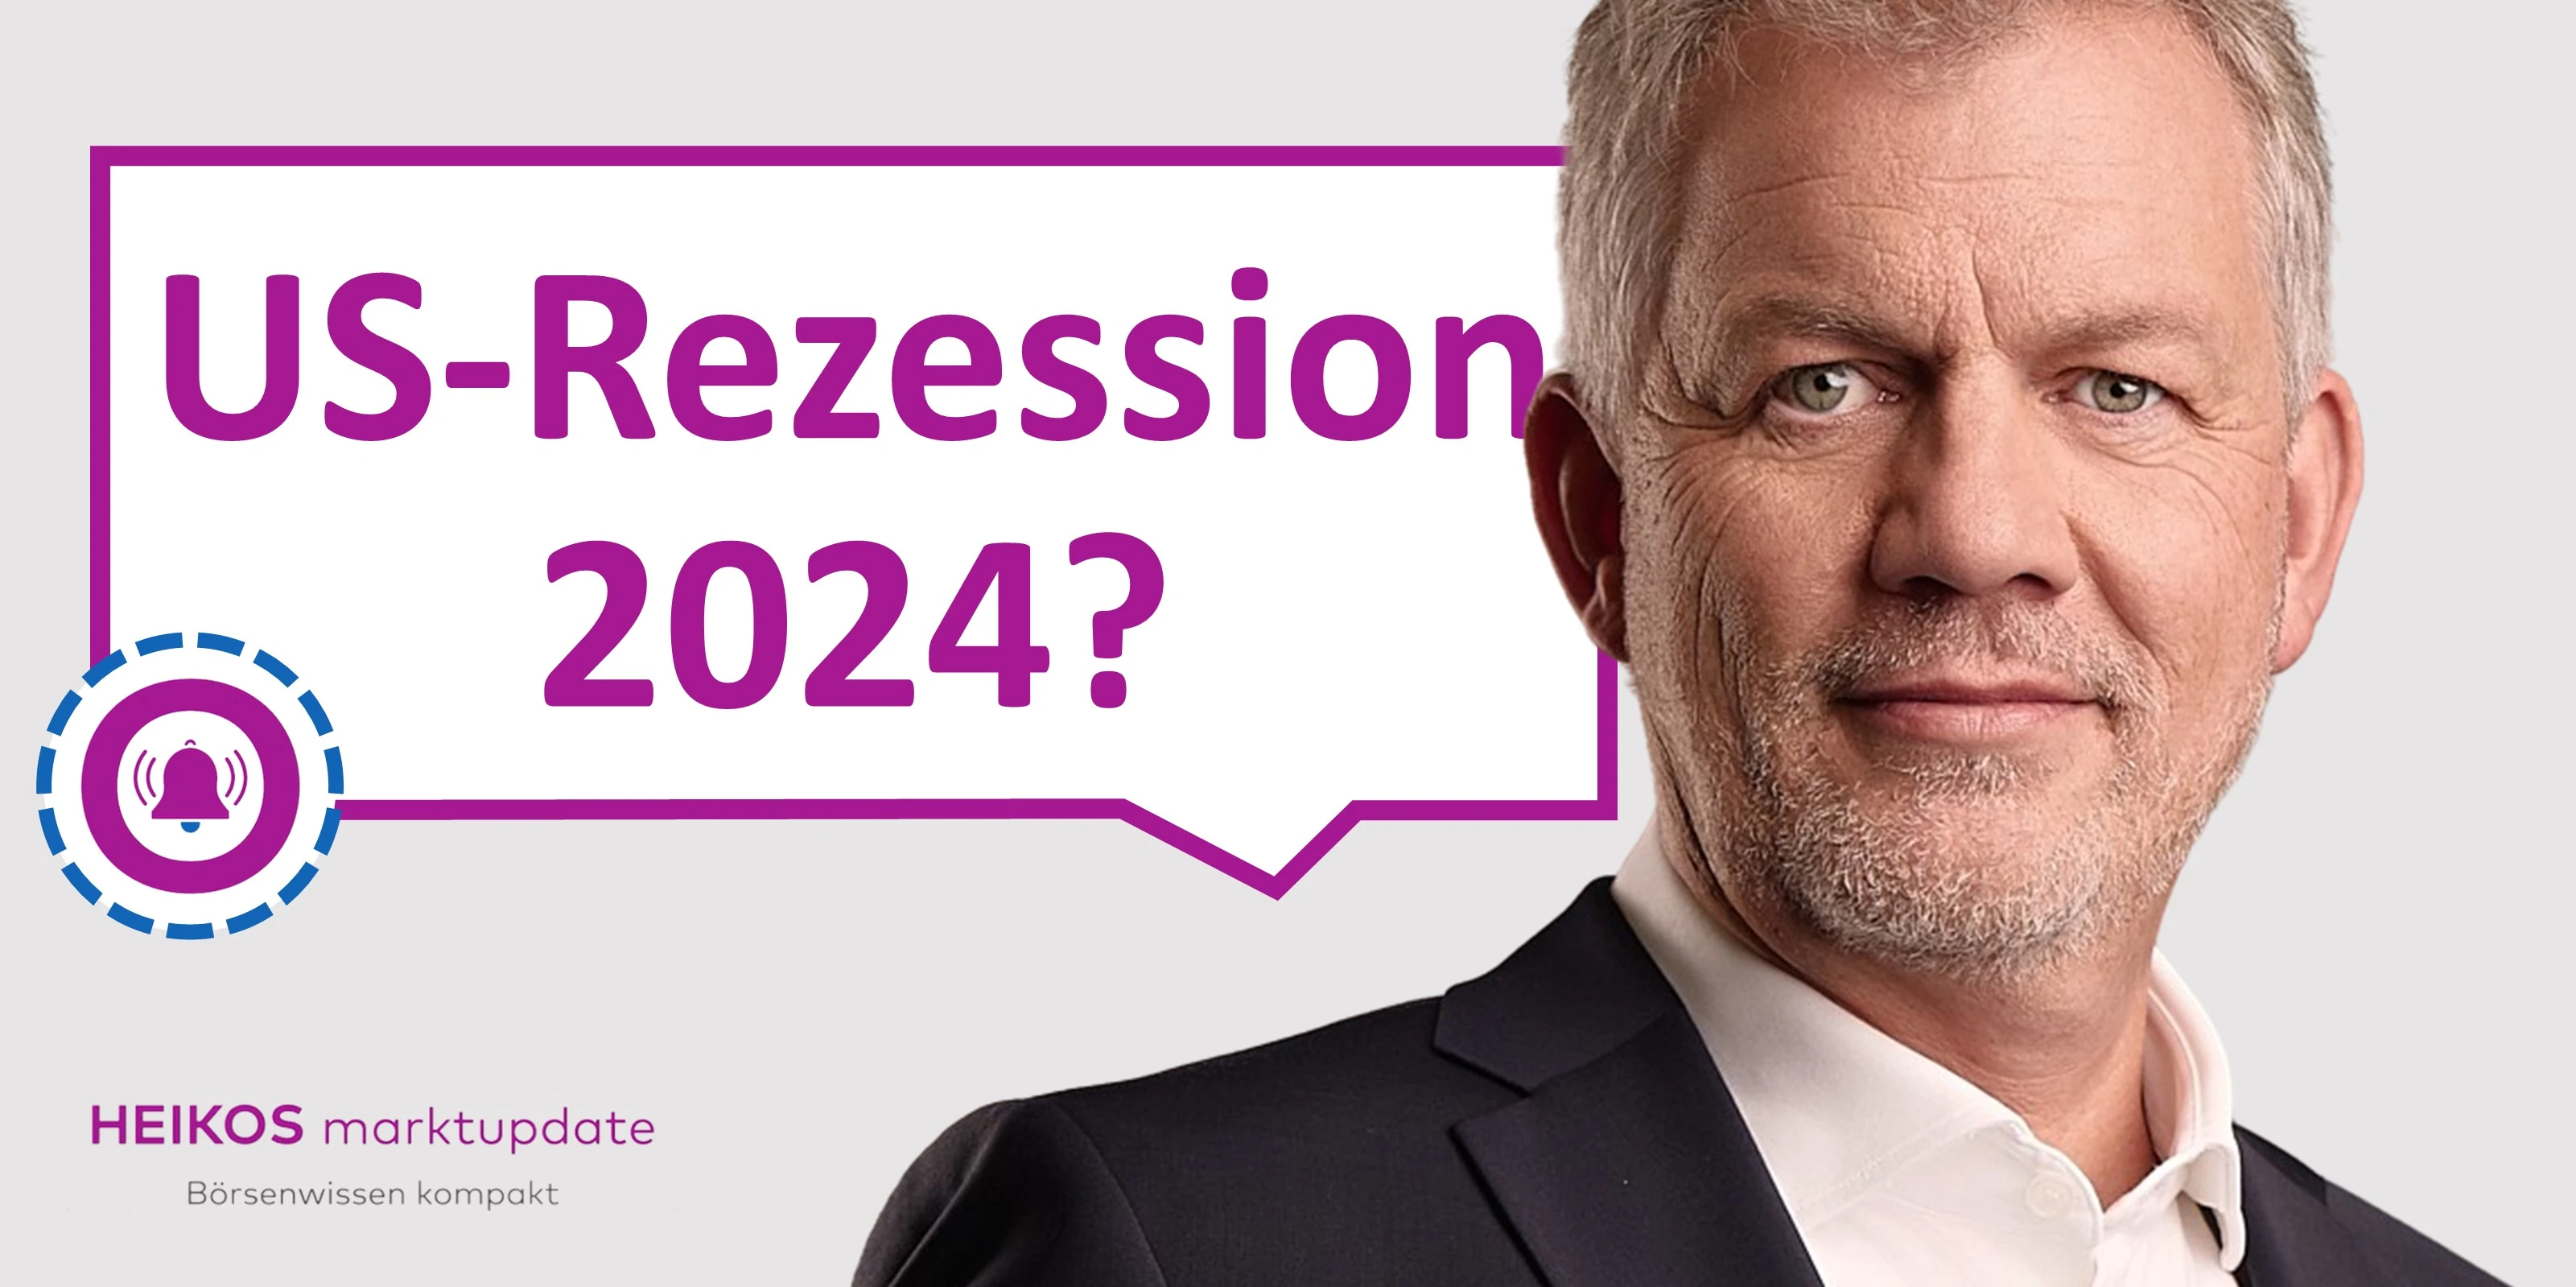 Heiko Böhmer zur möglichen US-Rezession in 2024